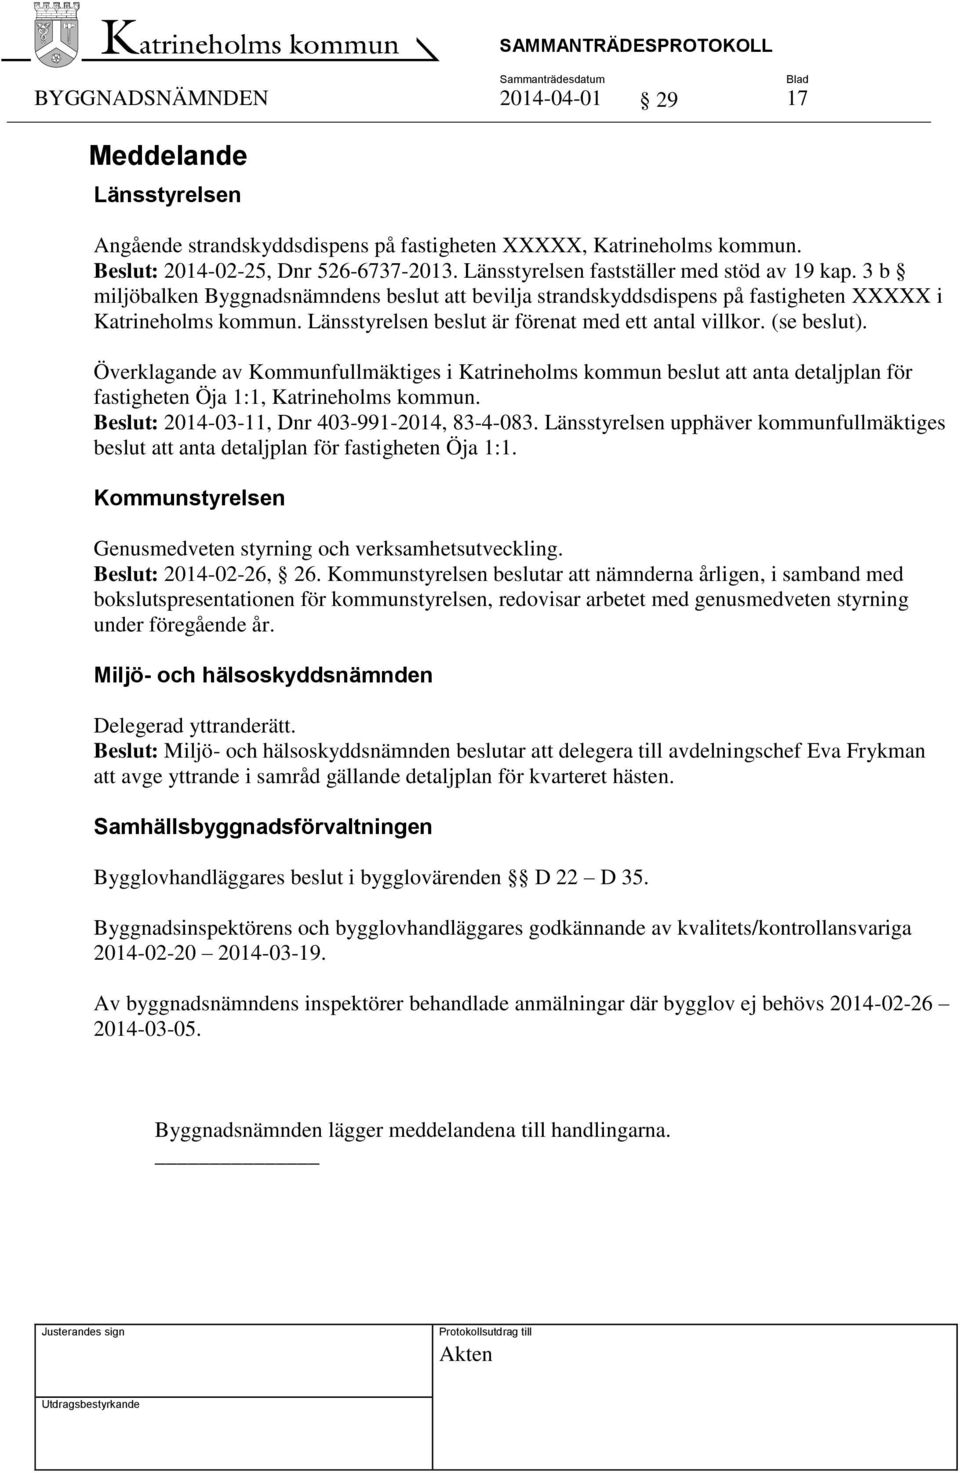 (se beslut). Överklagande av Kommunfullmäktiges i Katrineholms kommun beslut att anta detaljplan för fastigheten Öja 1:1, Katrineholms kommun. Beslut: 2014-03-11, Dnr 403-991-2014, 83-4-083.